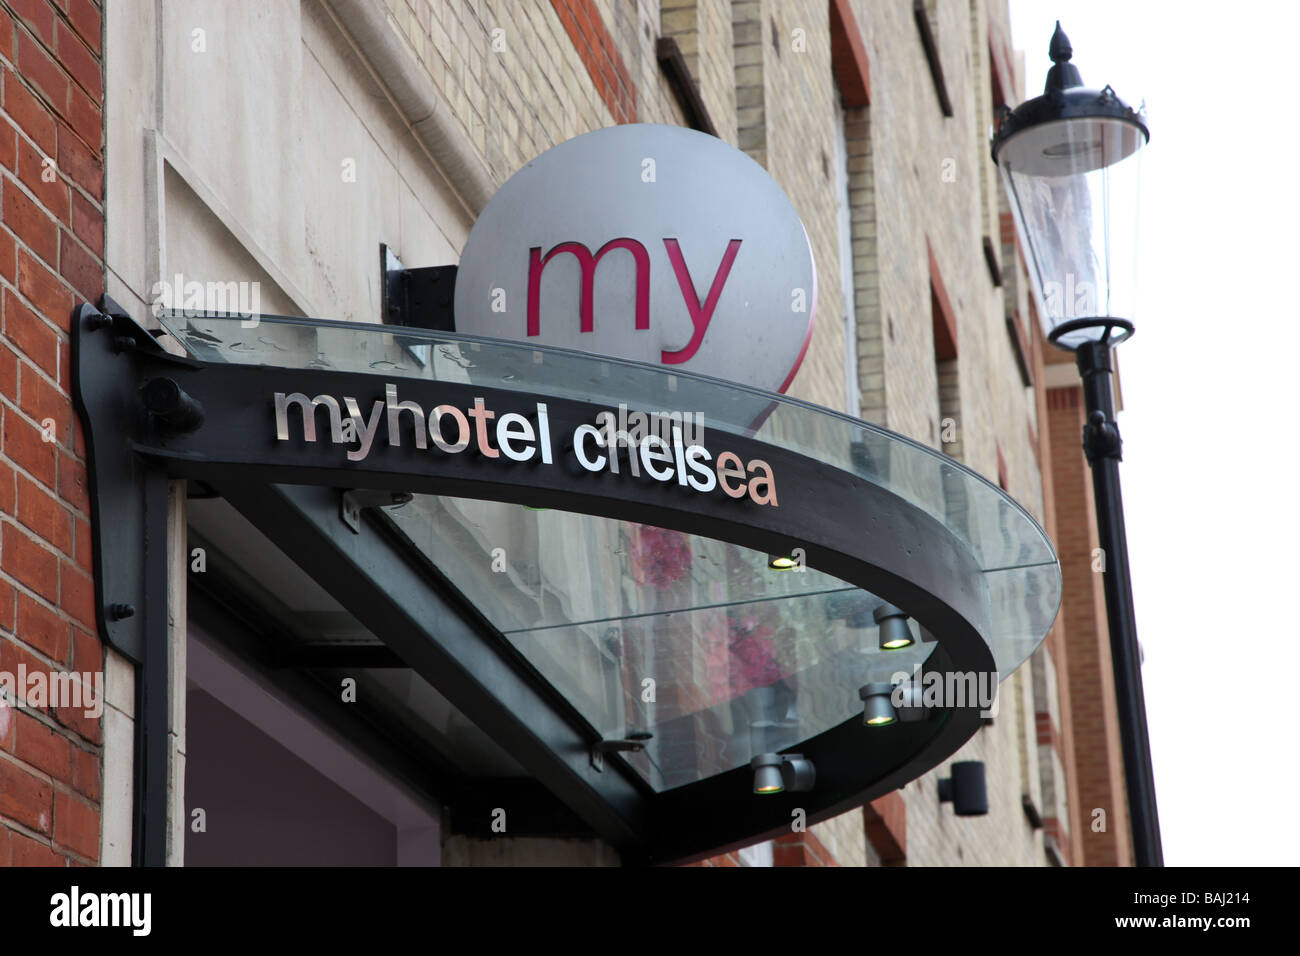 Hotels Near Chelsea, Chelsea Hotels London